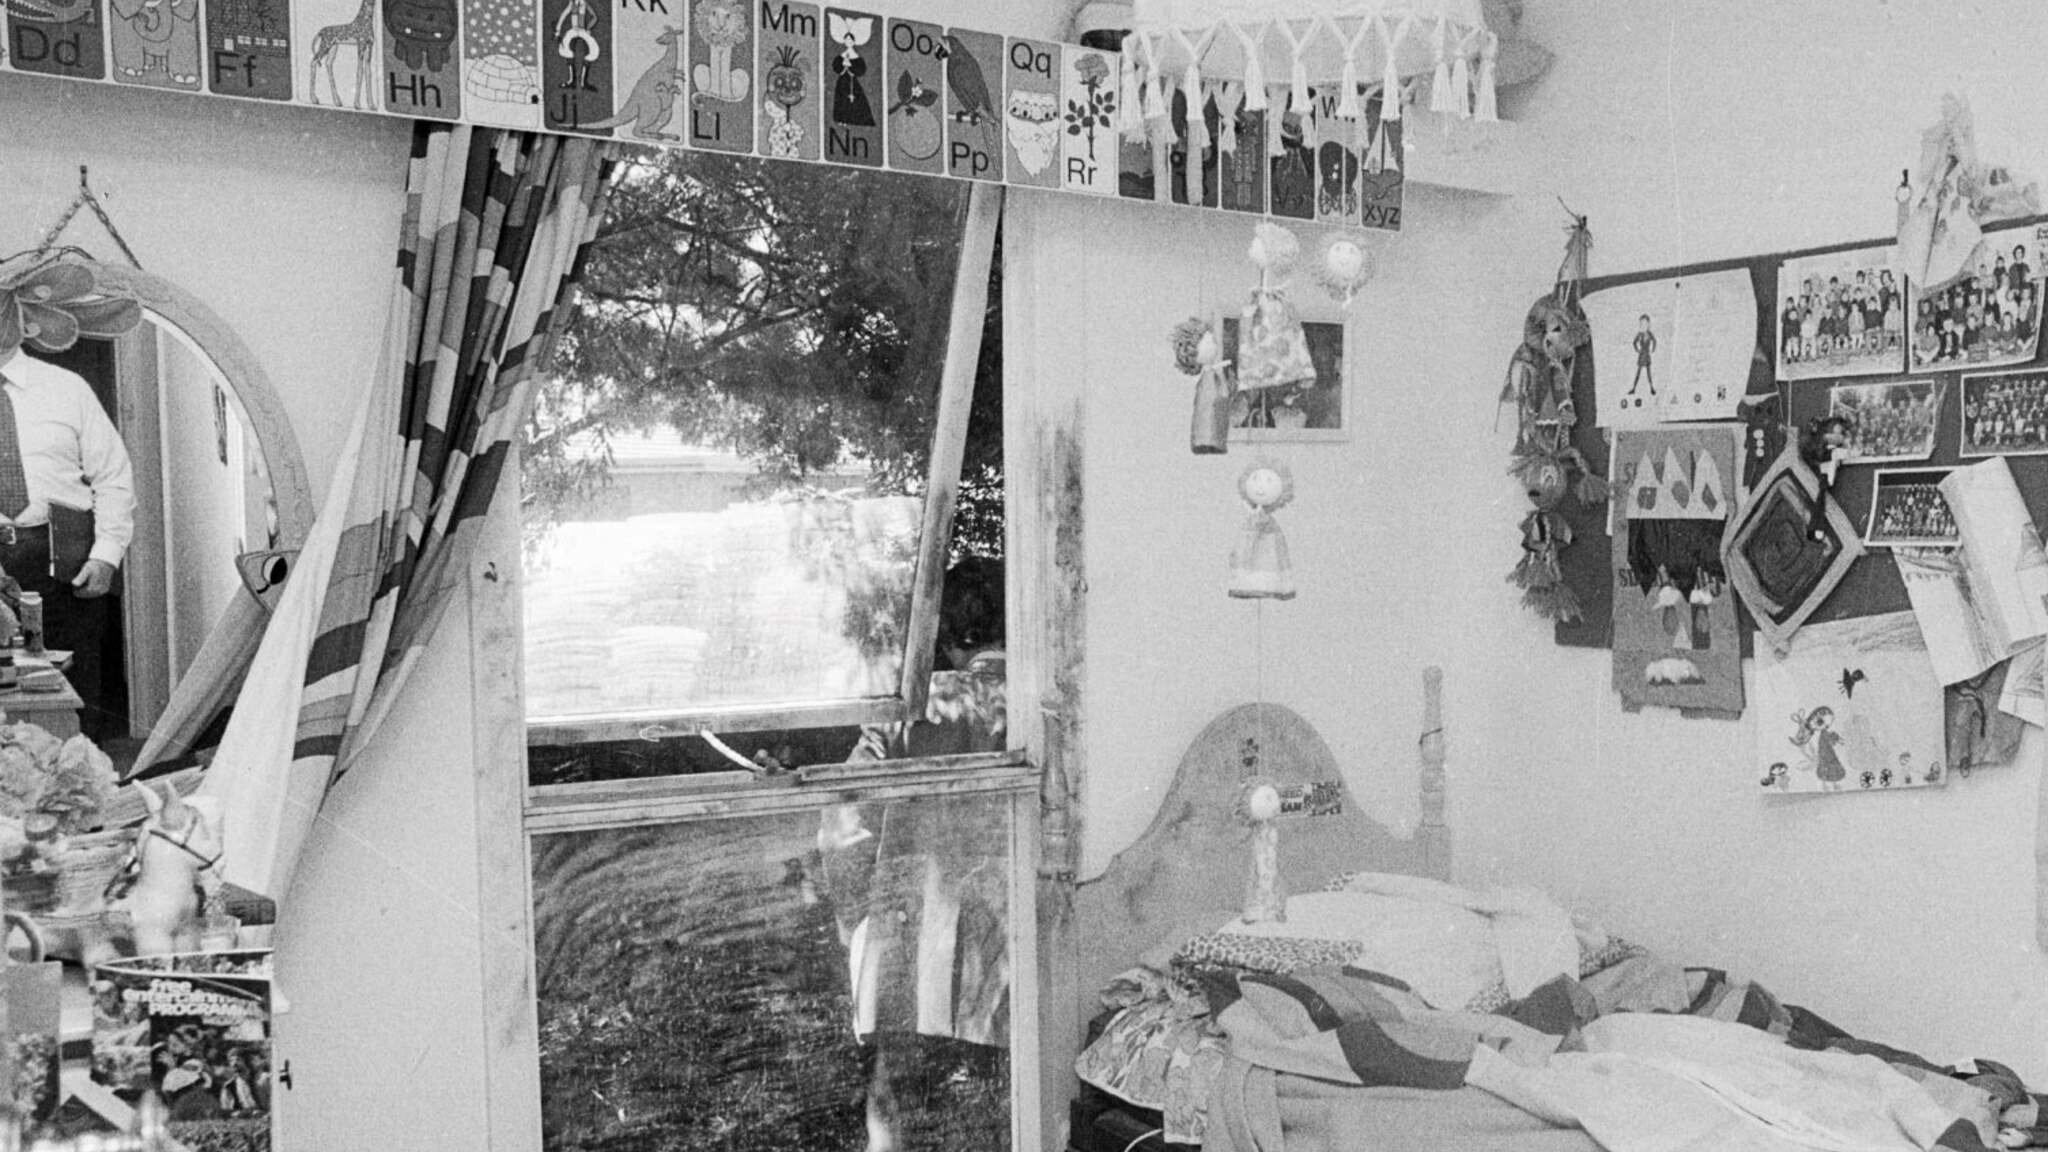 Eloise Worledge's bedroom